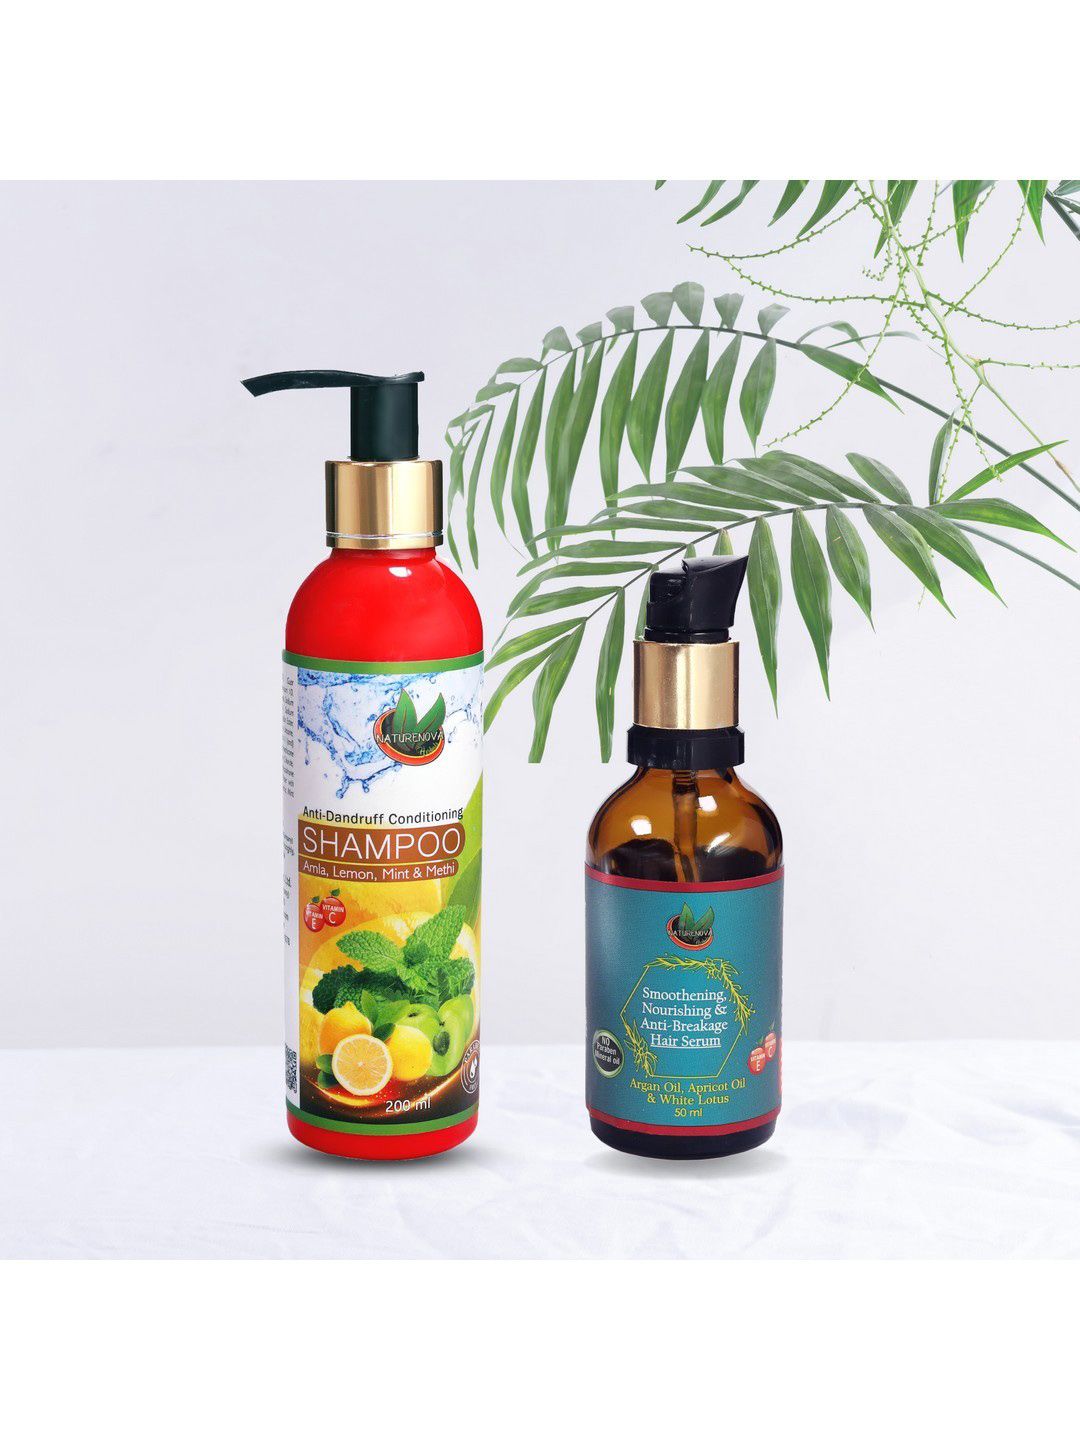 NatureNova Herbals Set of Anti-Dandruff Shampoo 200ml & Anti-Breakage Hair Serum 50ml Price in India